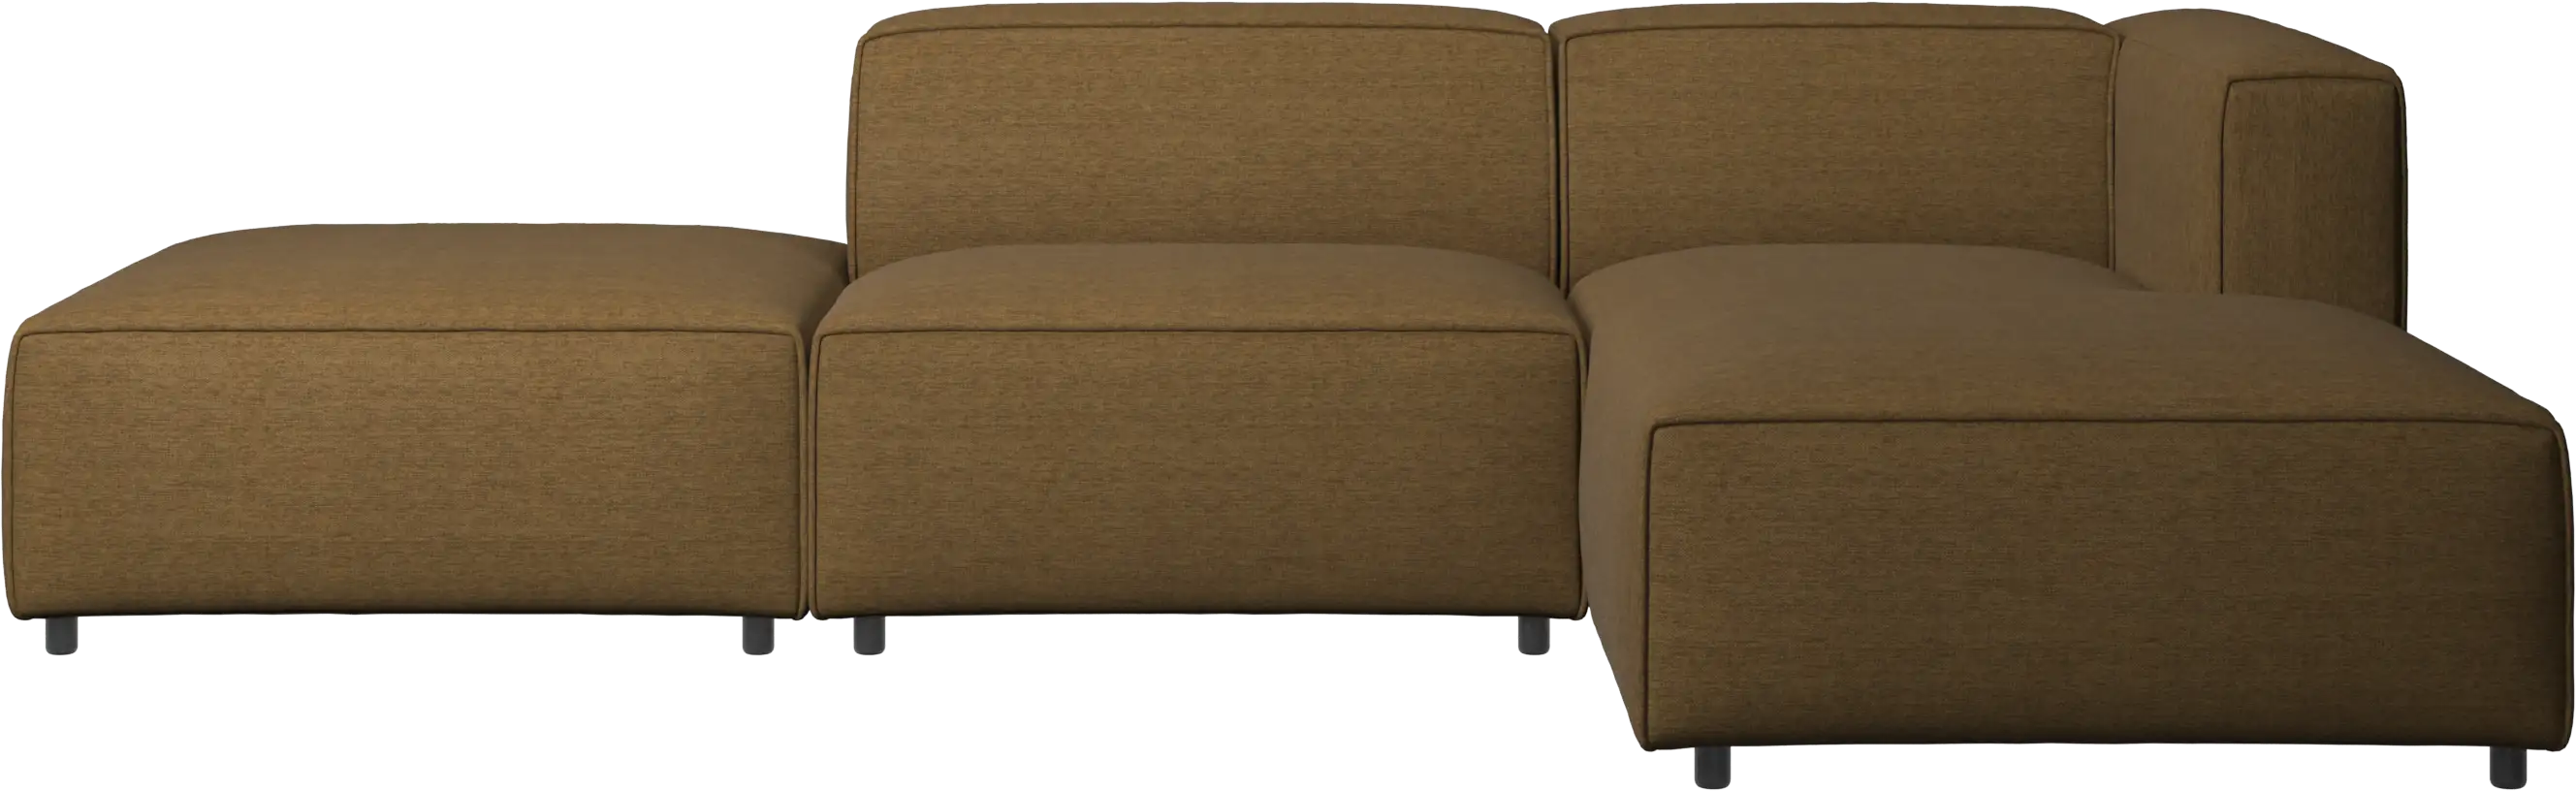 καναπές Carmo με μονάδα resting